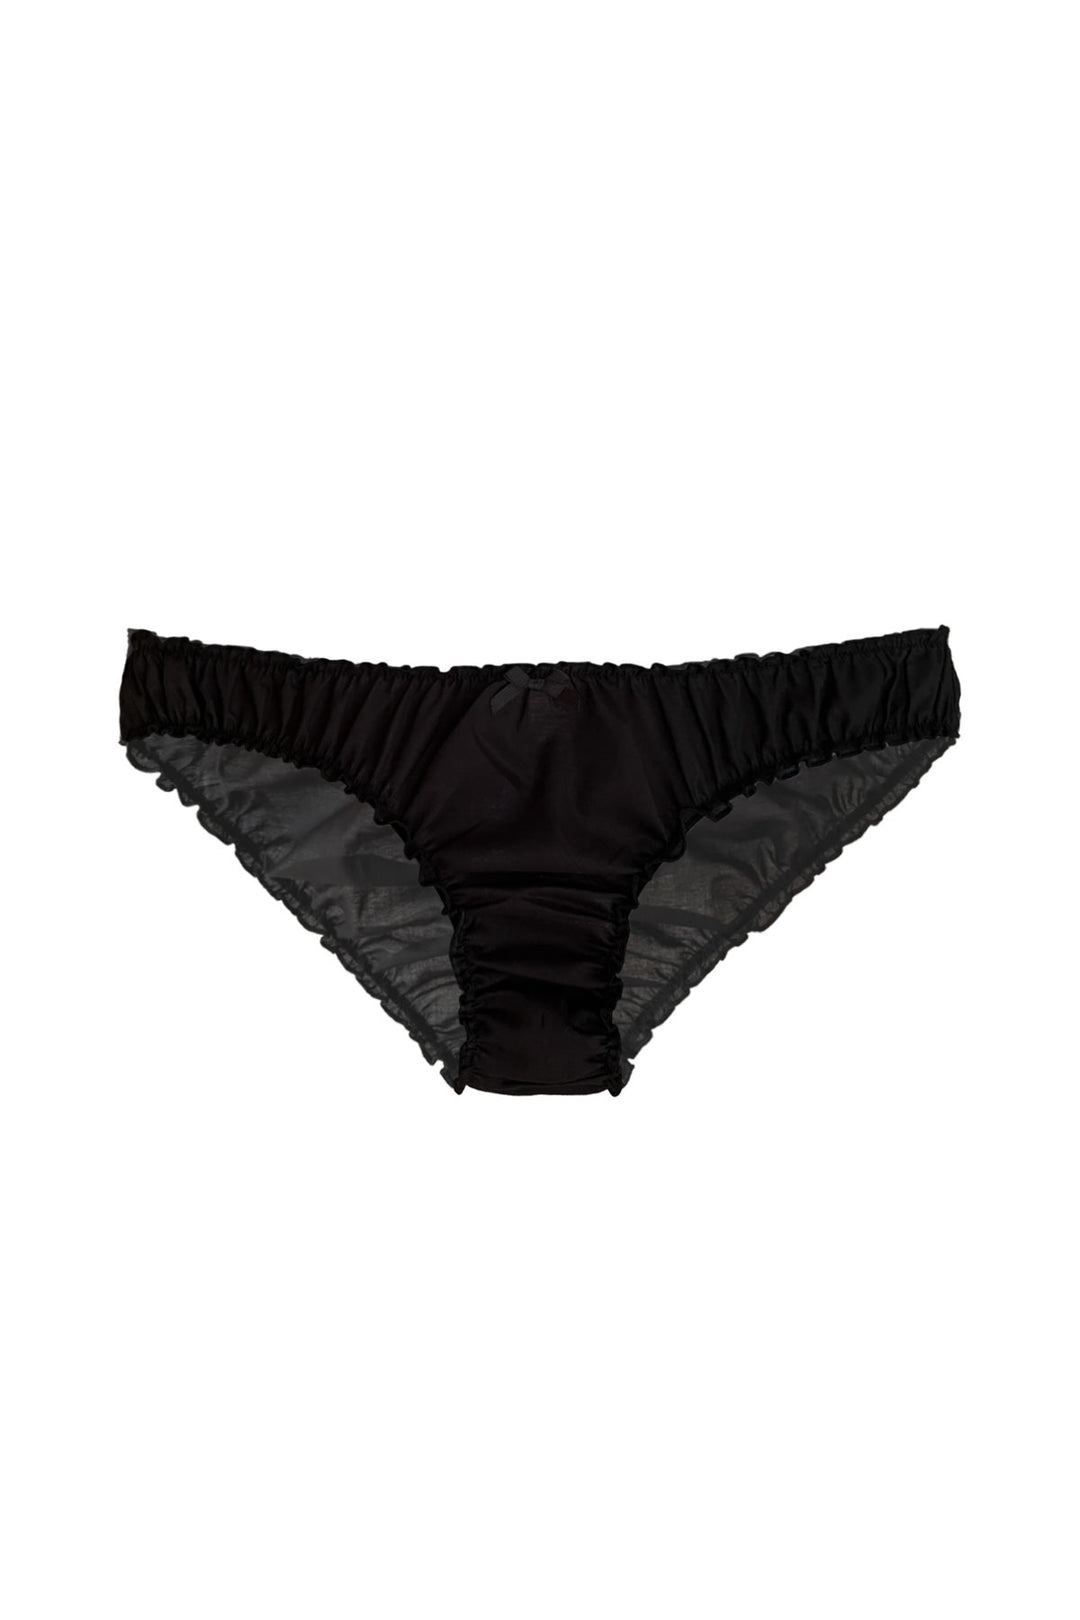 black organic cotton underwear